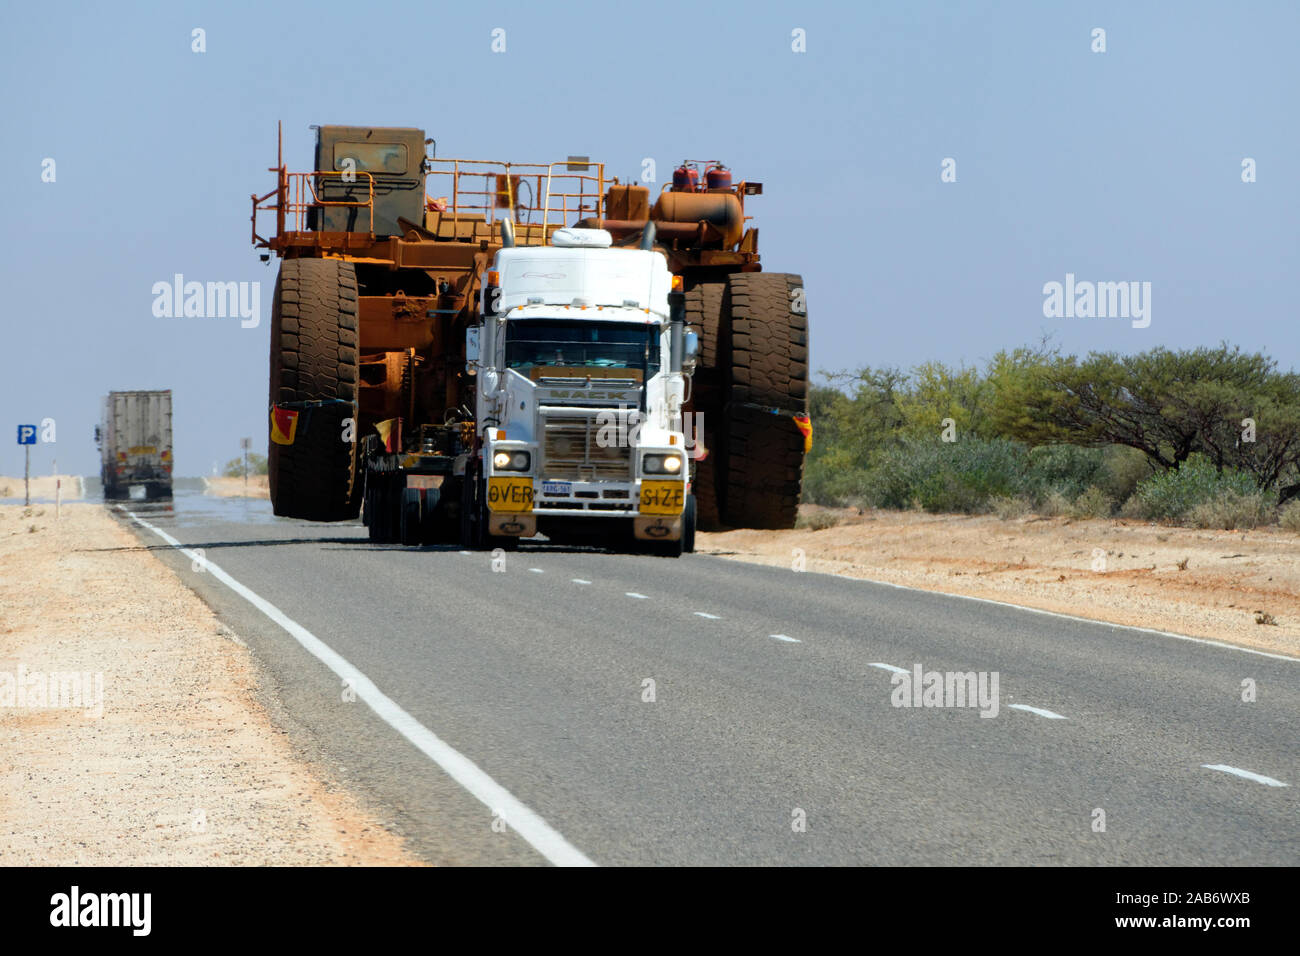 Over Size di trasporto su strada di un autocarro con cassone ribaltabile su un molto caldo outback autostrada con calore sfarfallare, Australia occidentale Foto Stock